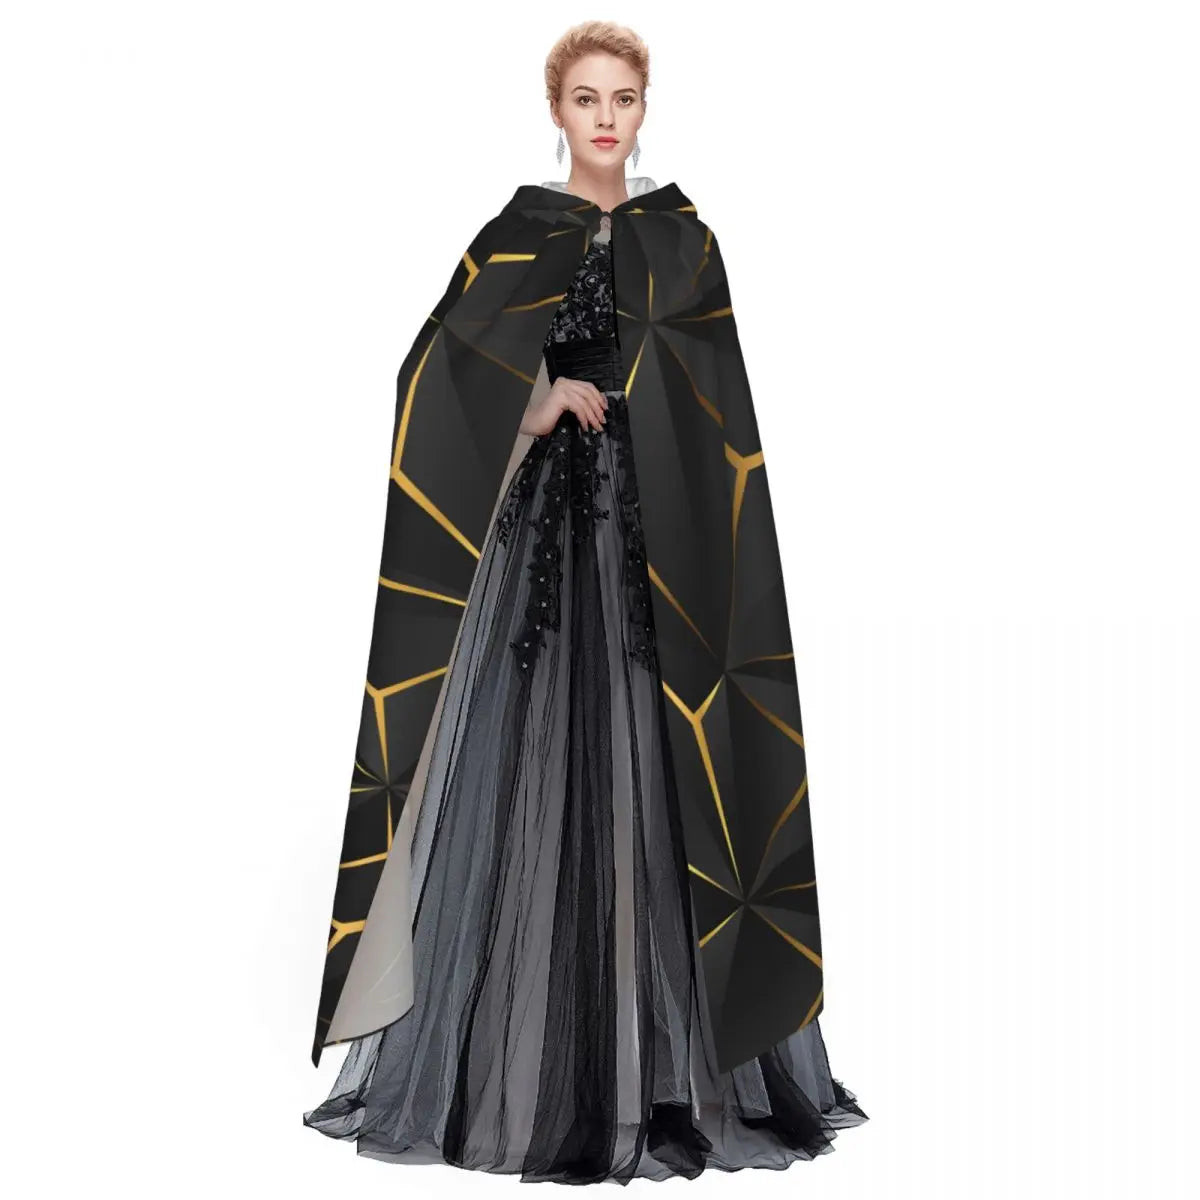 Cape à capuche magique en Polyester unisexe, accessoire de Costume de sorcière